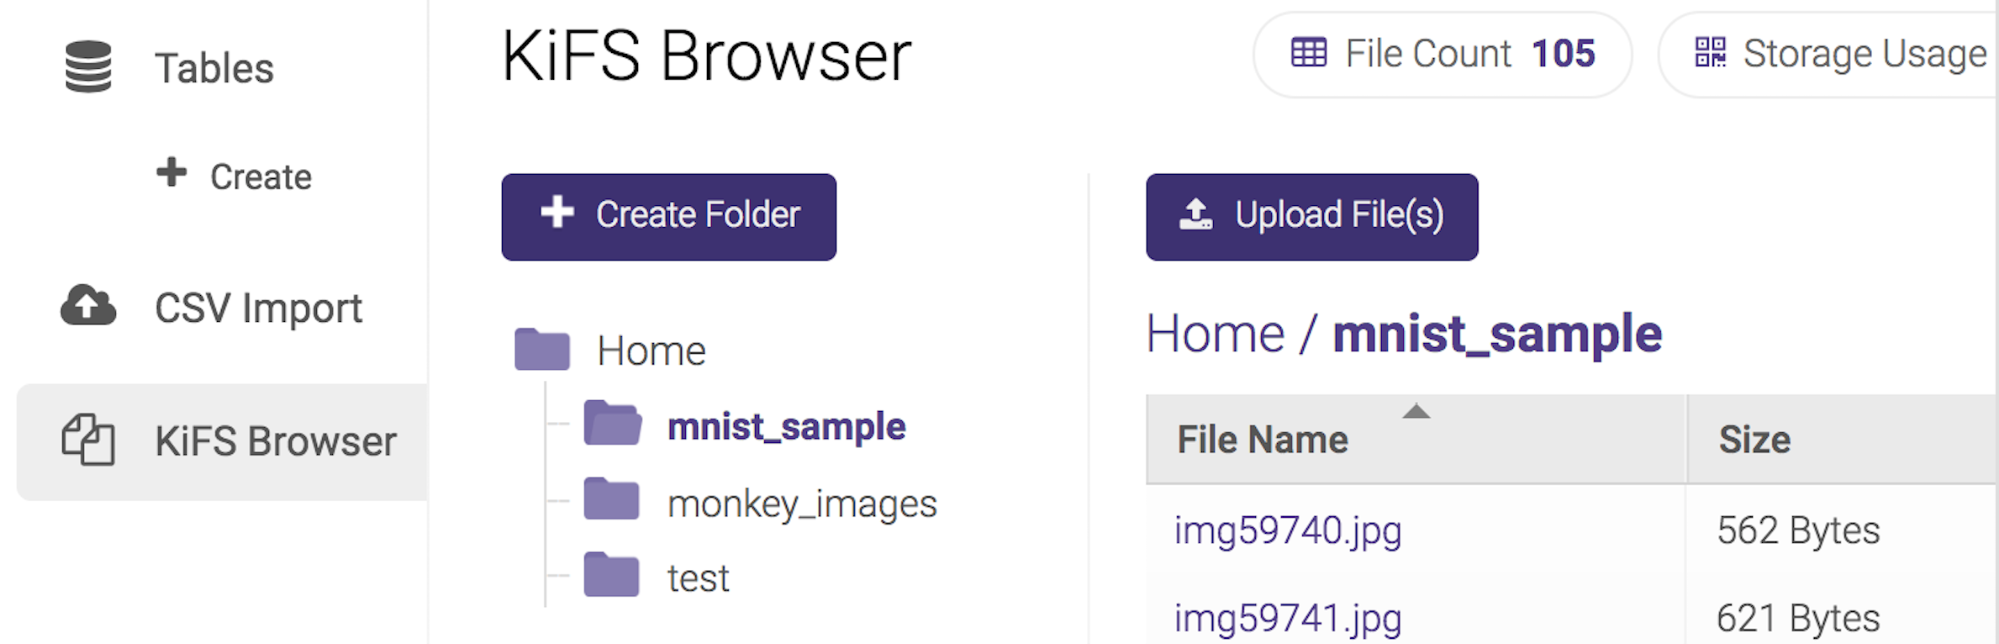 KiFS Browser